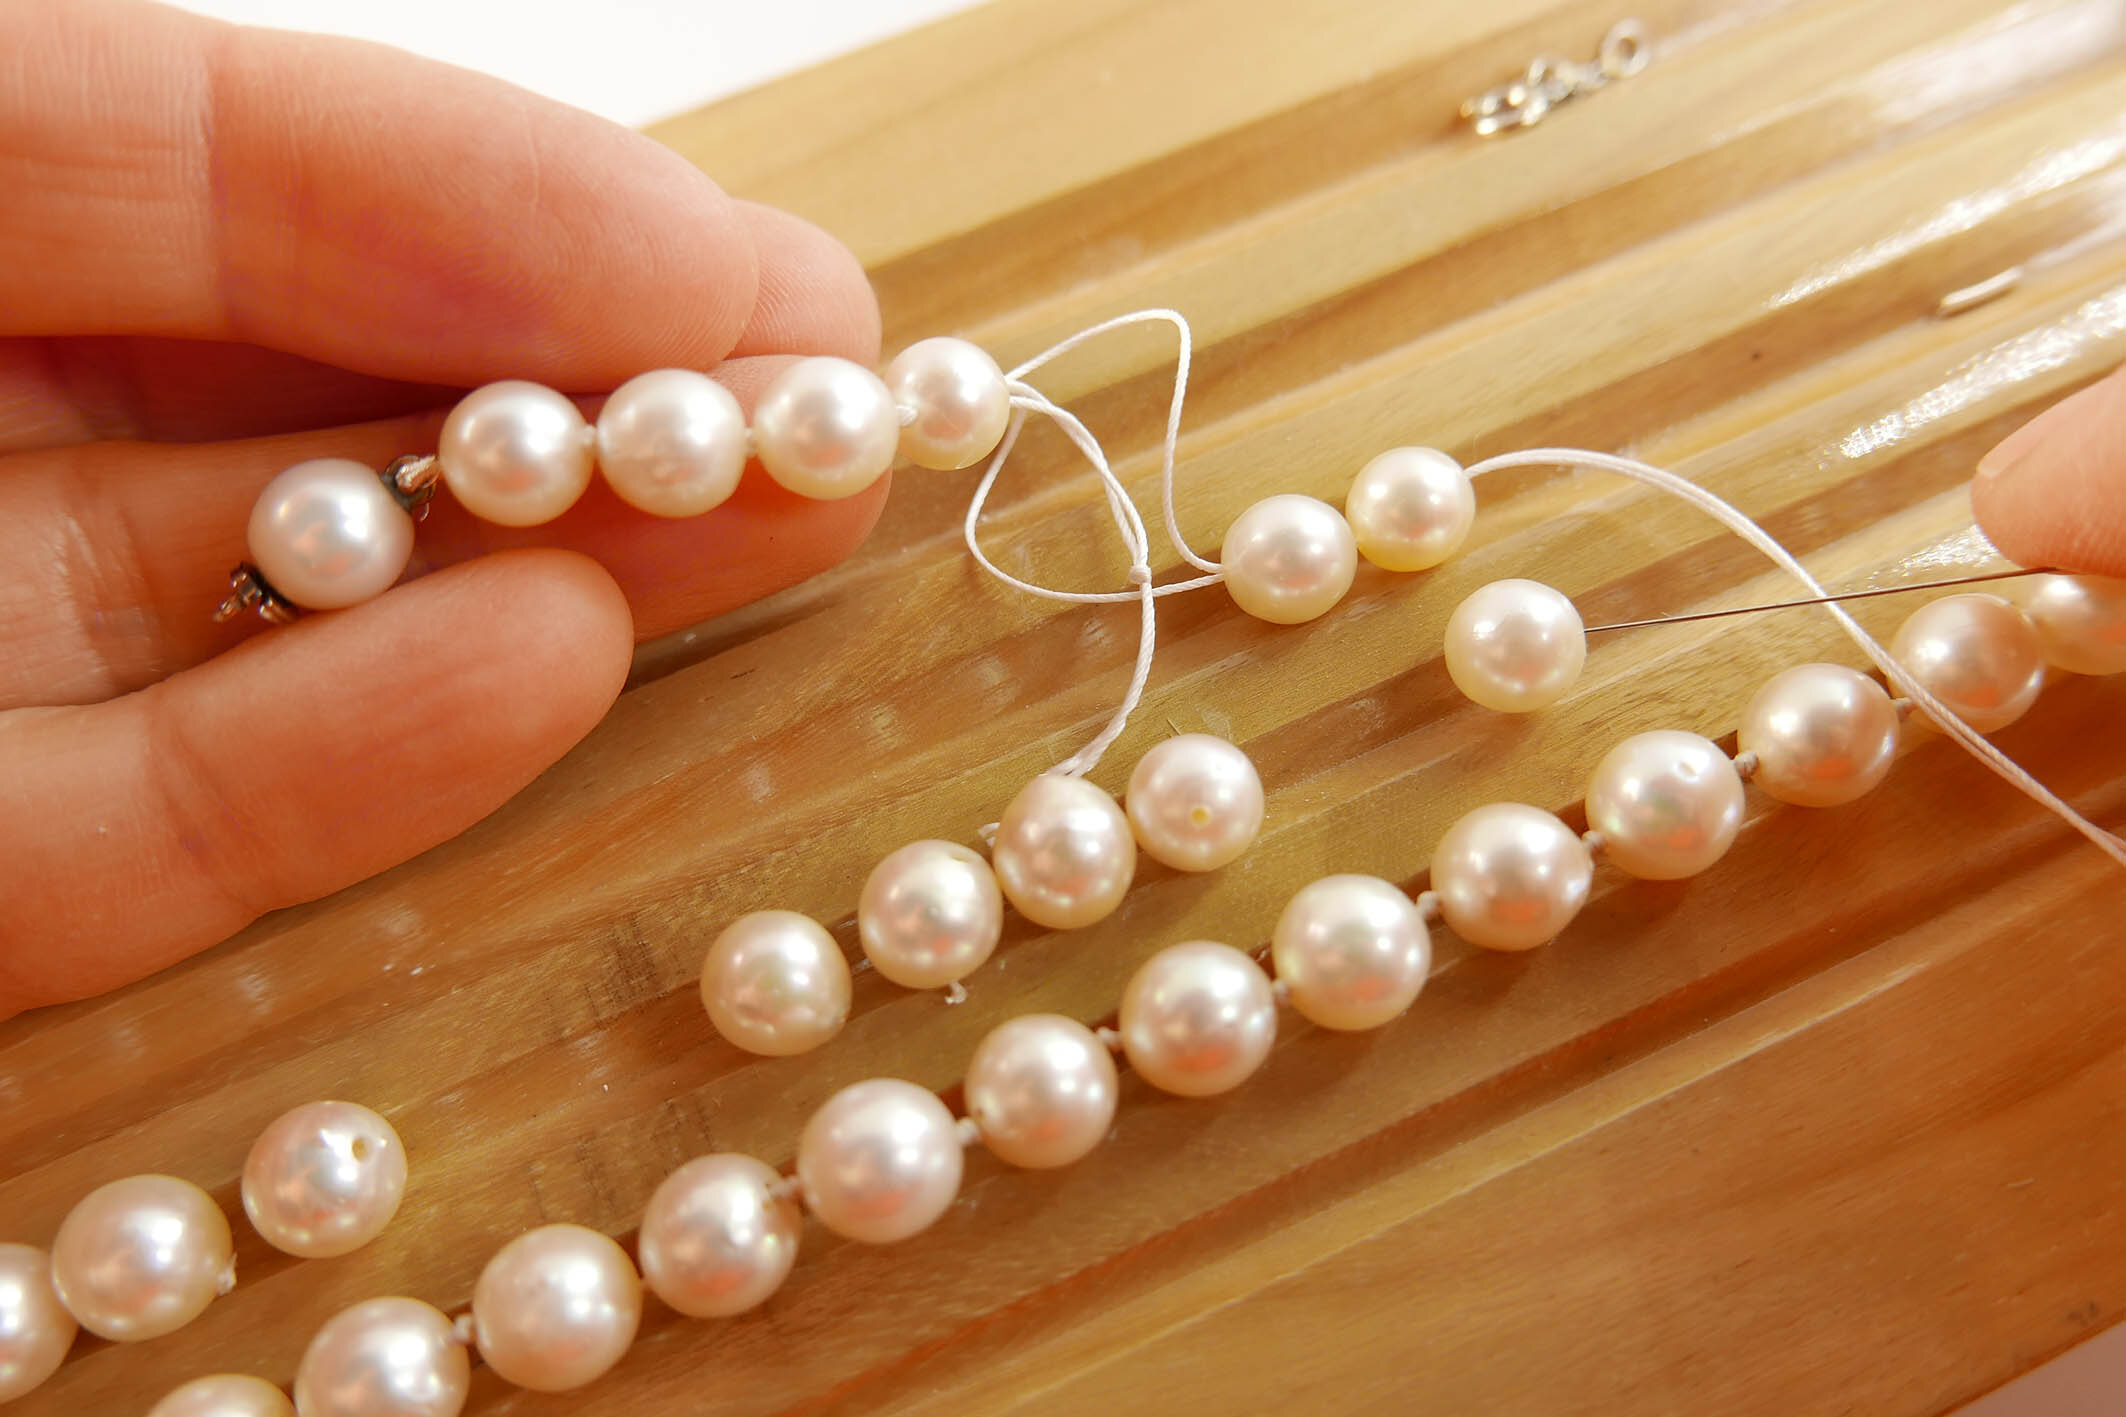 Comment entretenir son collier de perles? — GemInfinity